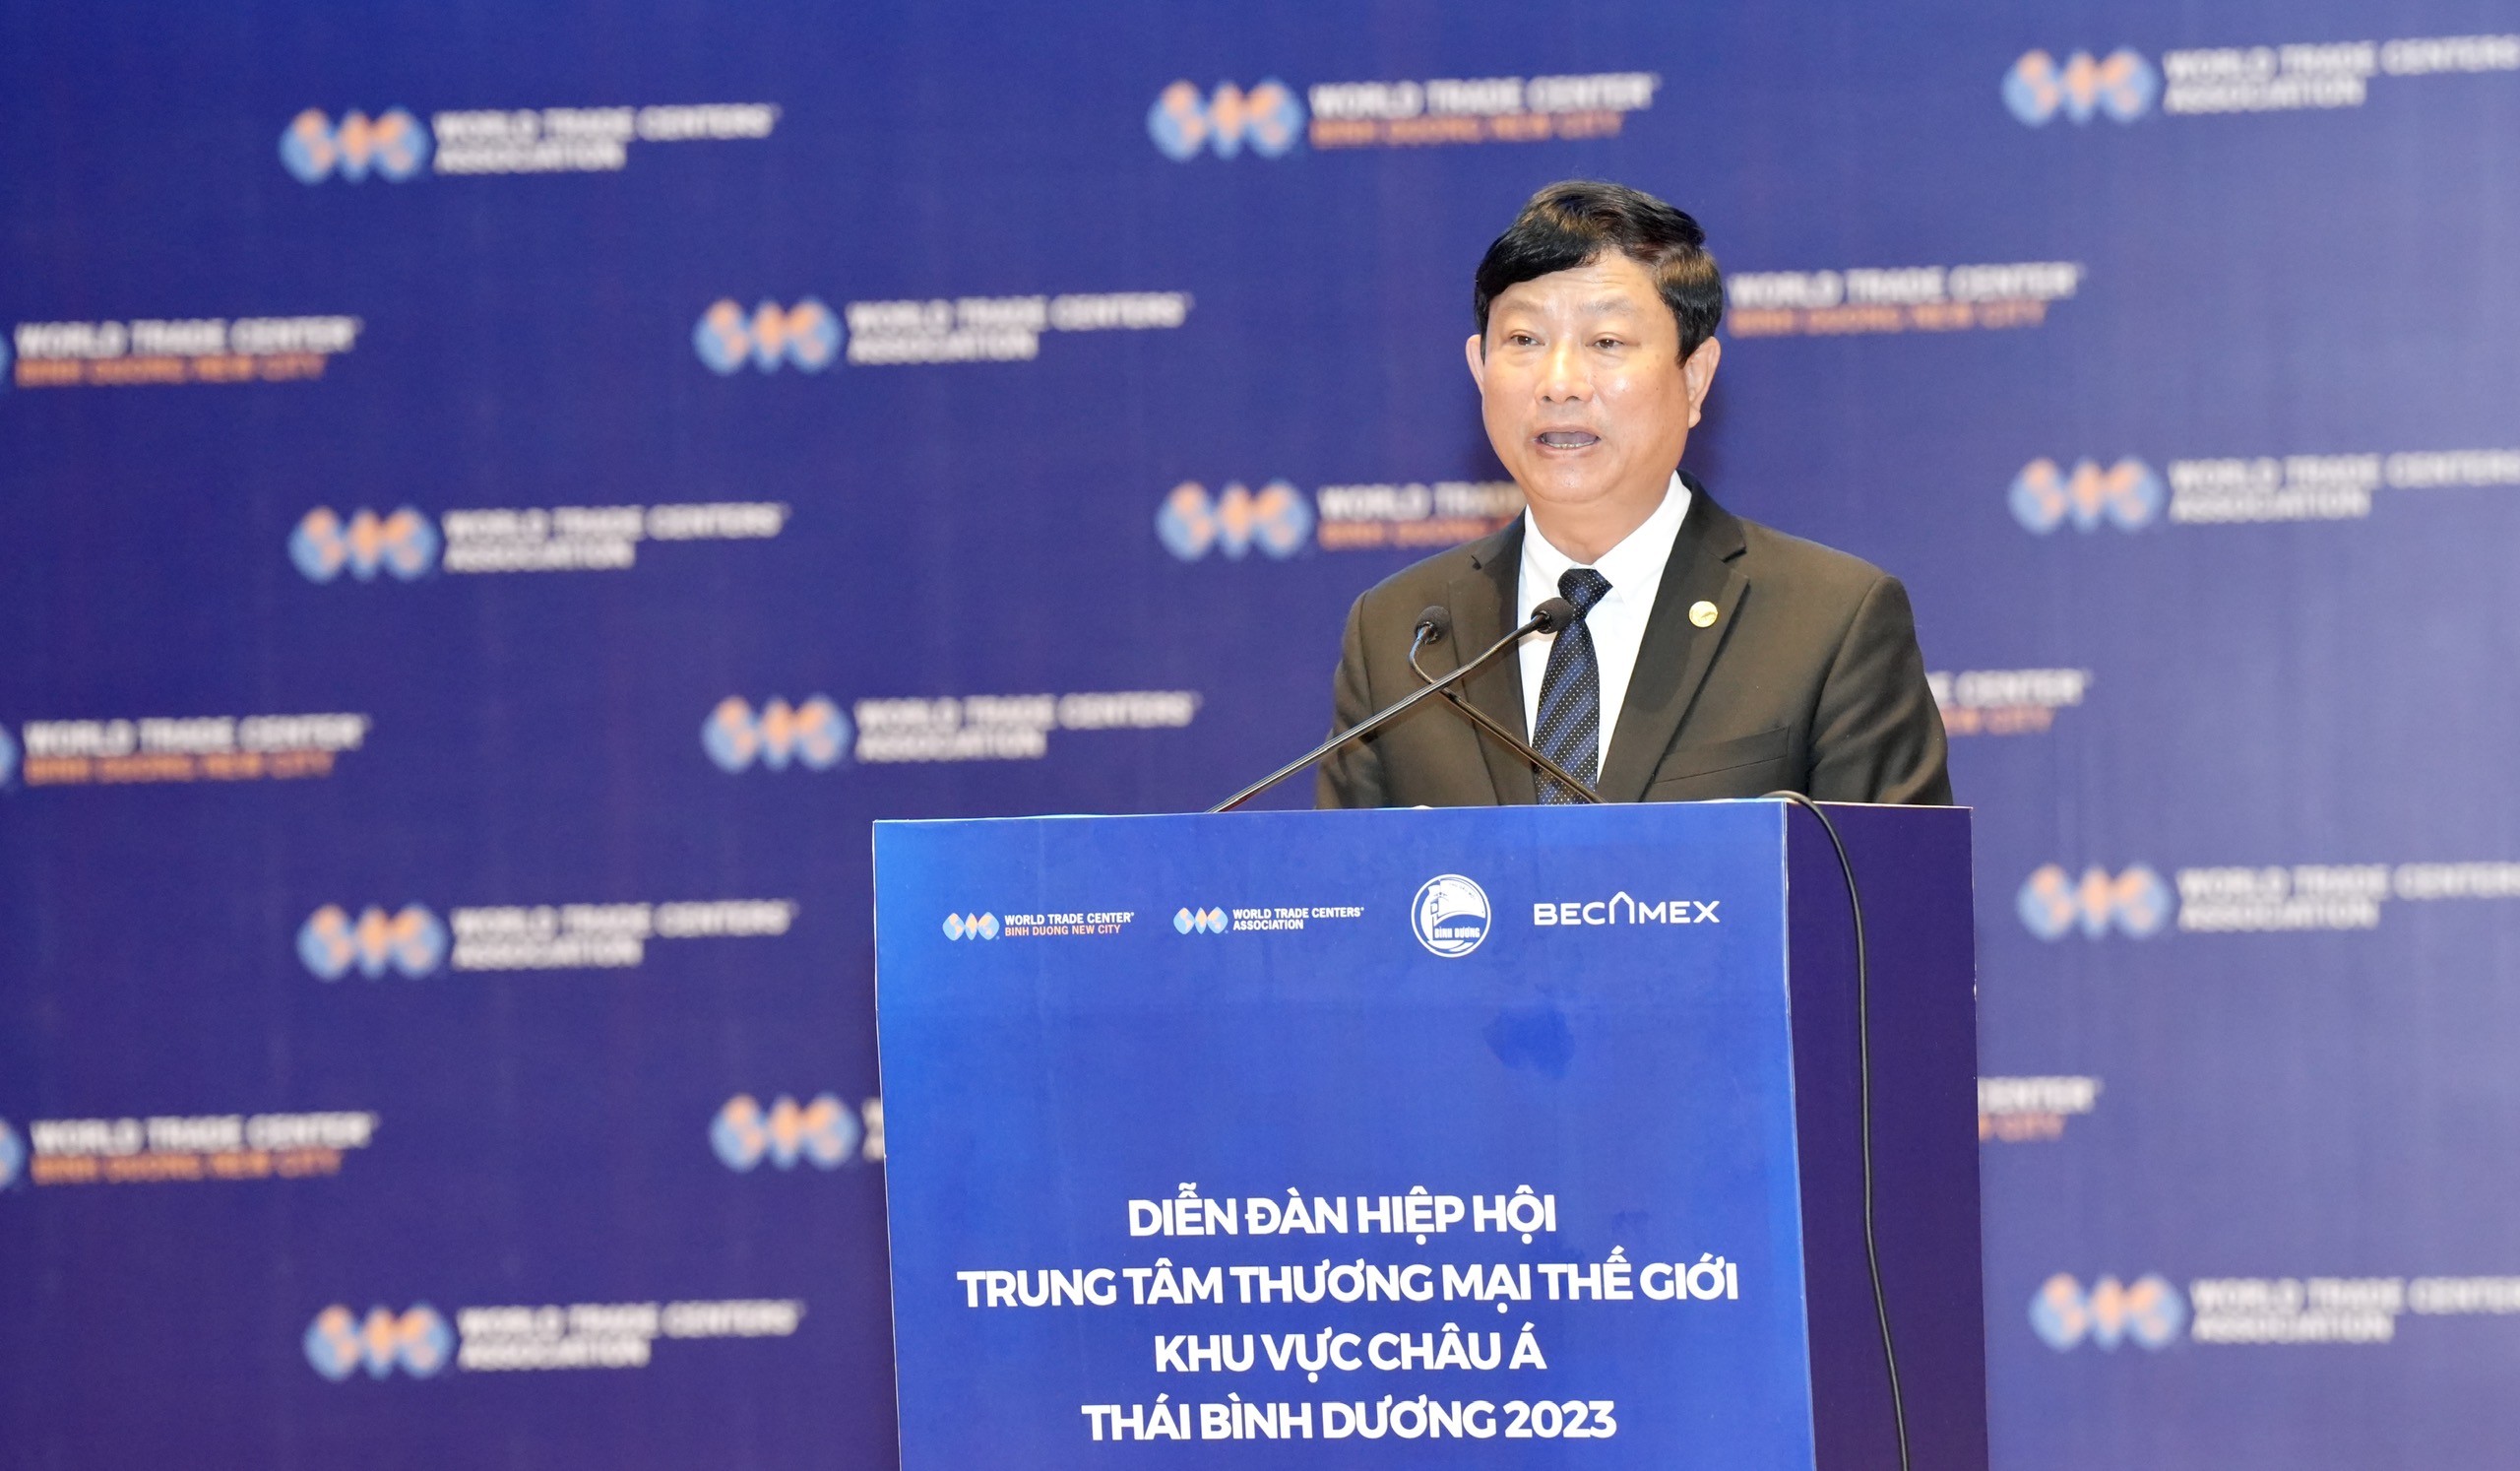 Đồng chí Võ Văn Minh, Chủ tịch UBND tỉnh phát biểu tại diễn đàn.